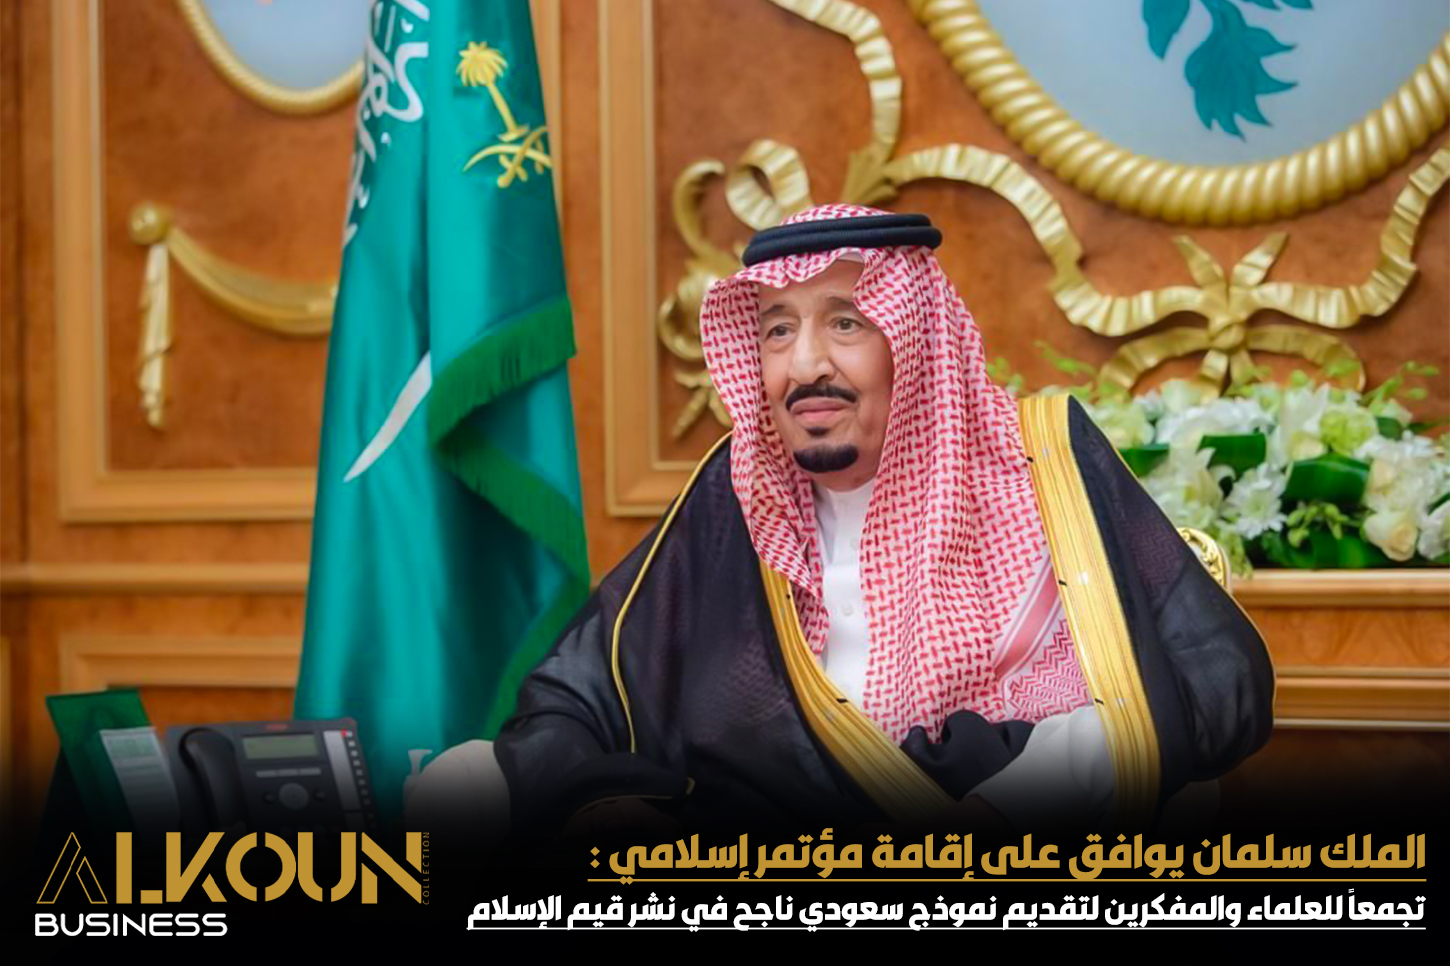 الملك سلمان يوافق على إقامة مؤتمر إسلامي : تجمعاً للعلماء والمفكرين لتقديم نموذج سعودي ناجح في نشر قيم الإسلام